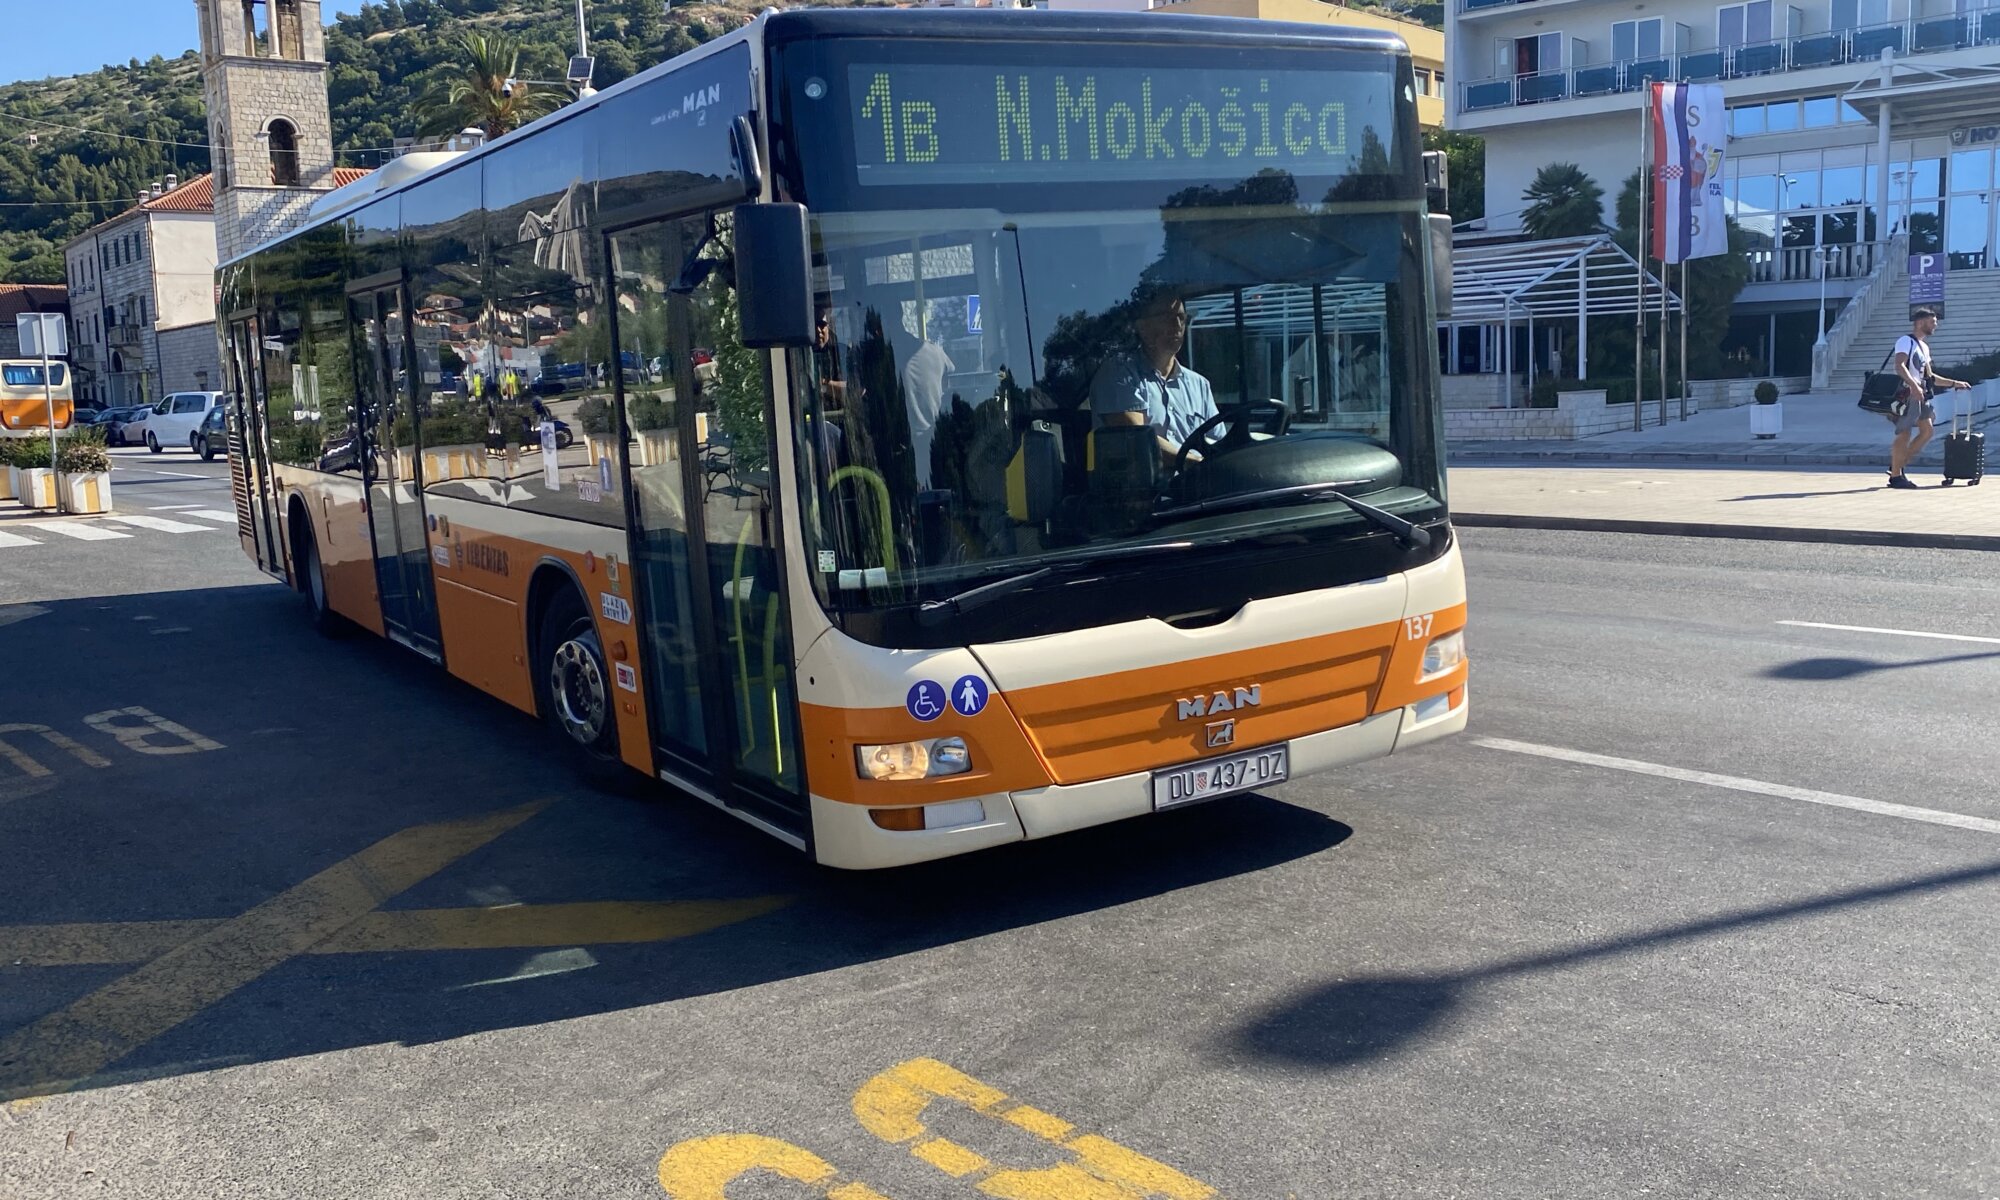 Public transport, Dubrovnik